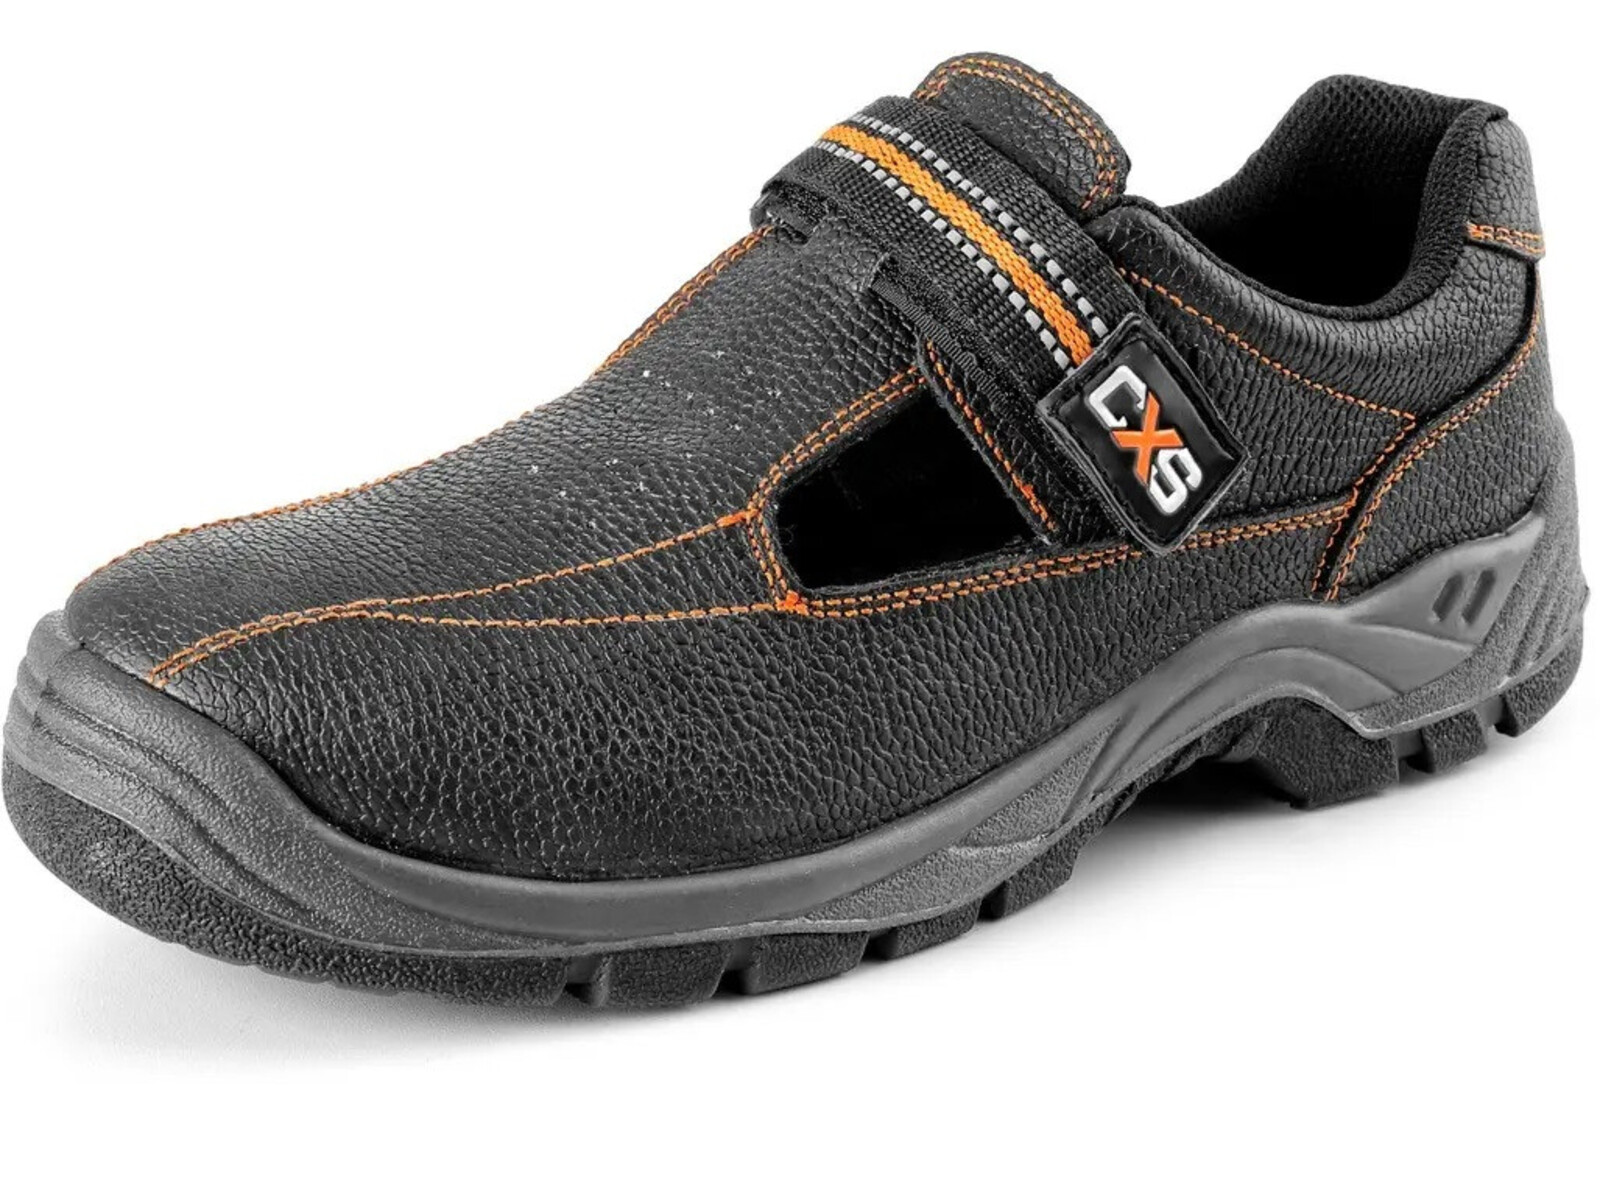 Pracovné sandále CXS Stone Nefrit O1 FO SRC - veľkosť: 36, farba: čierna/oranžová